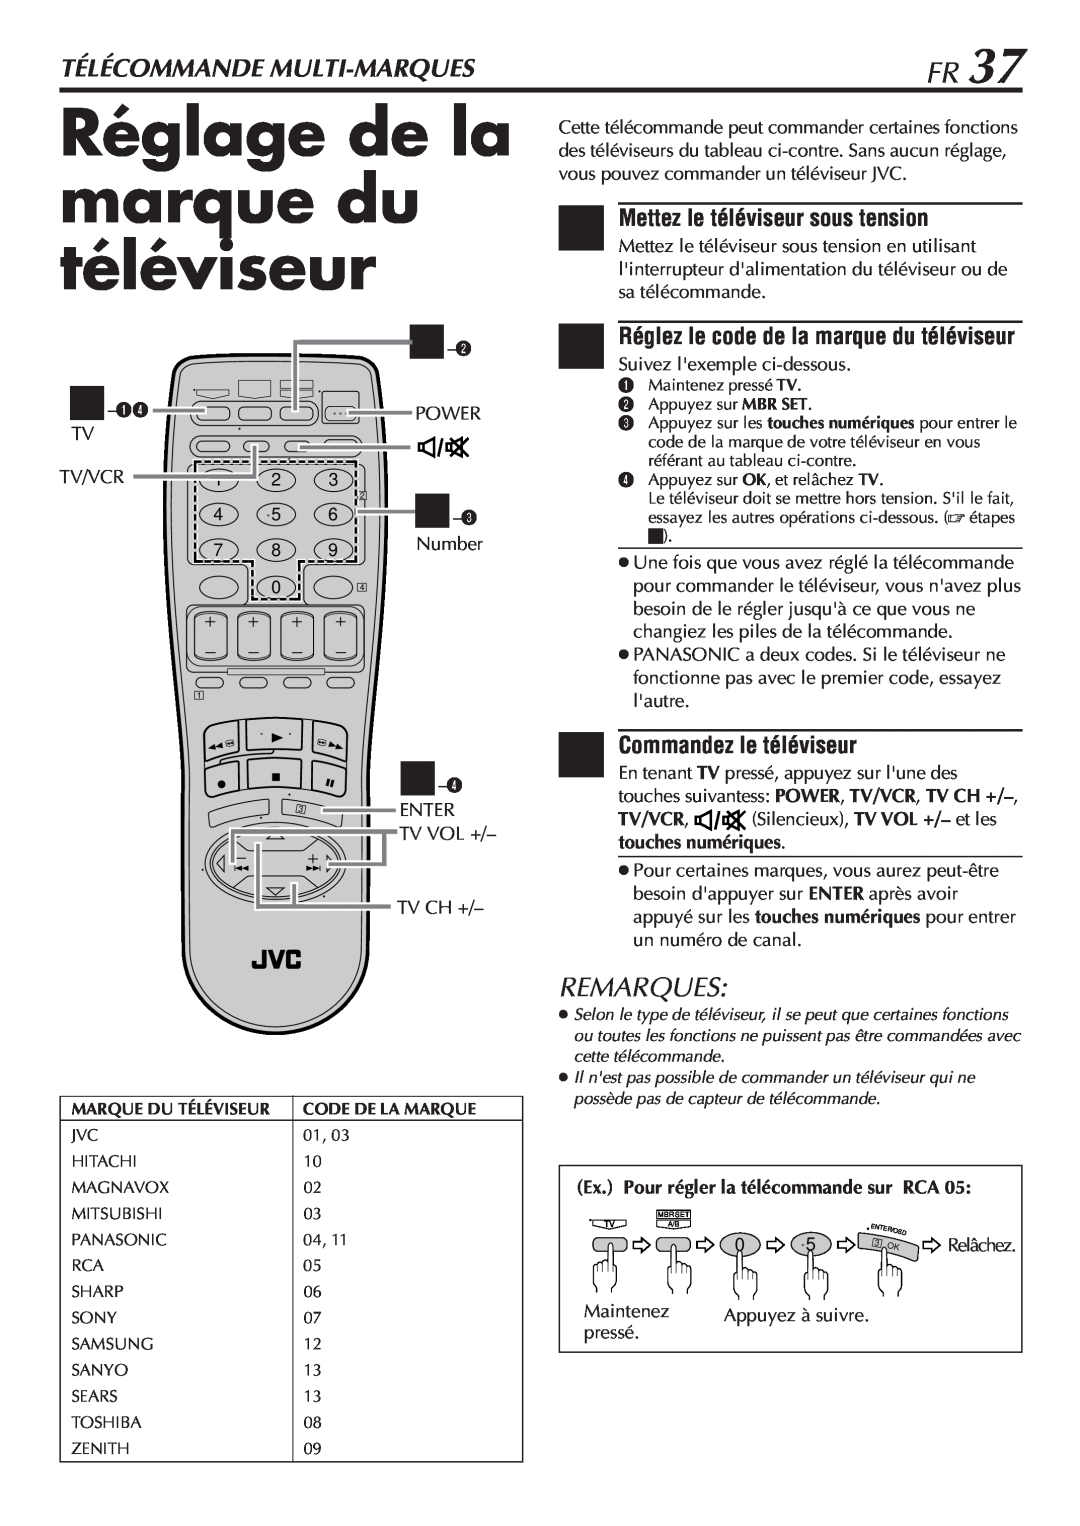 JVC HR-VP58U manual Réglage de la marque du téléviseur, Télécommande Multi-Marques, Commandez le téléviseur, Remarques 